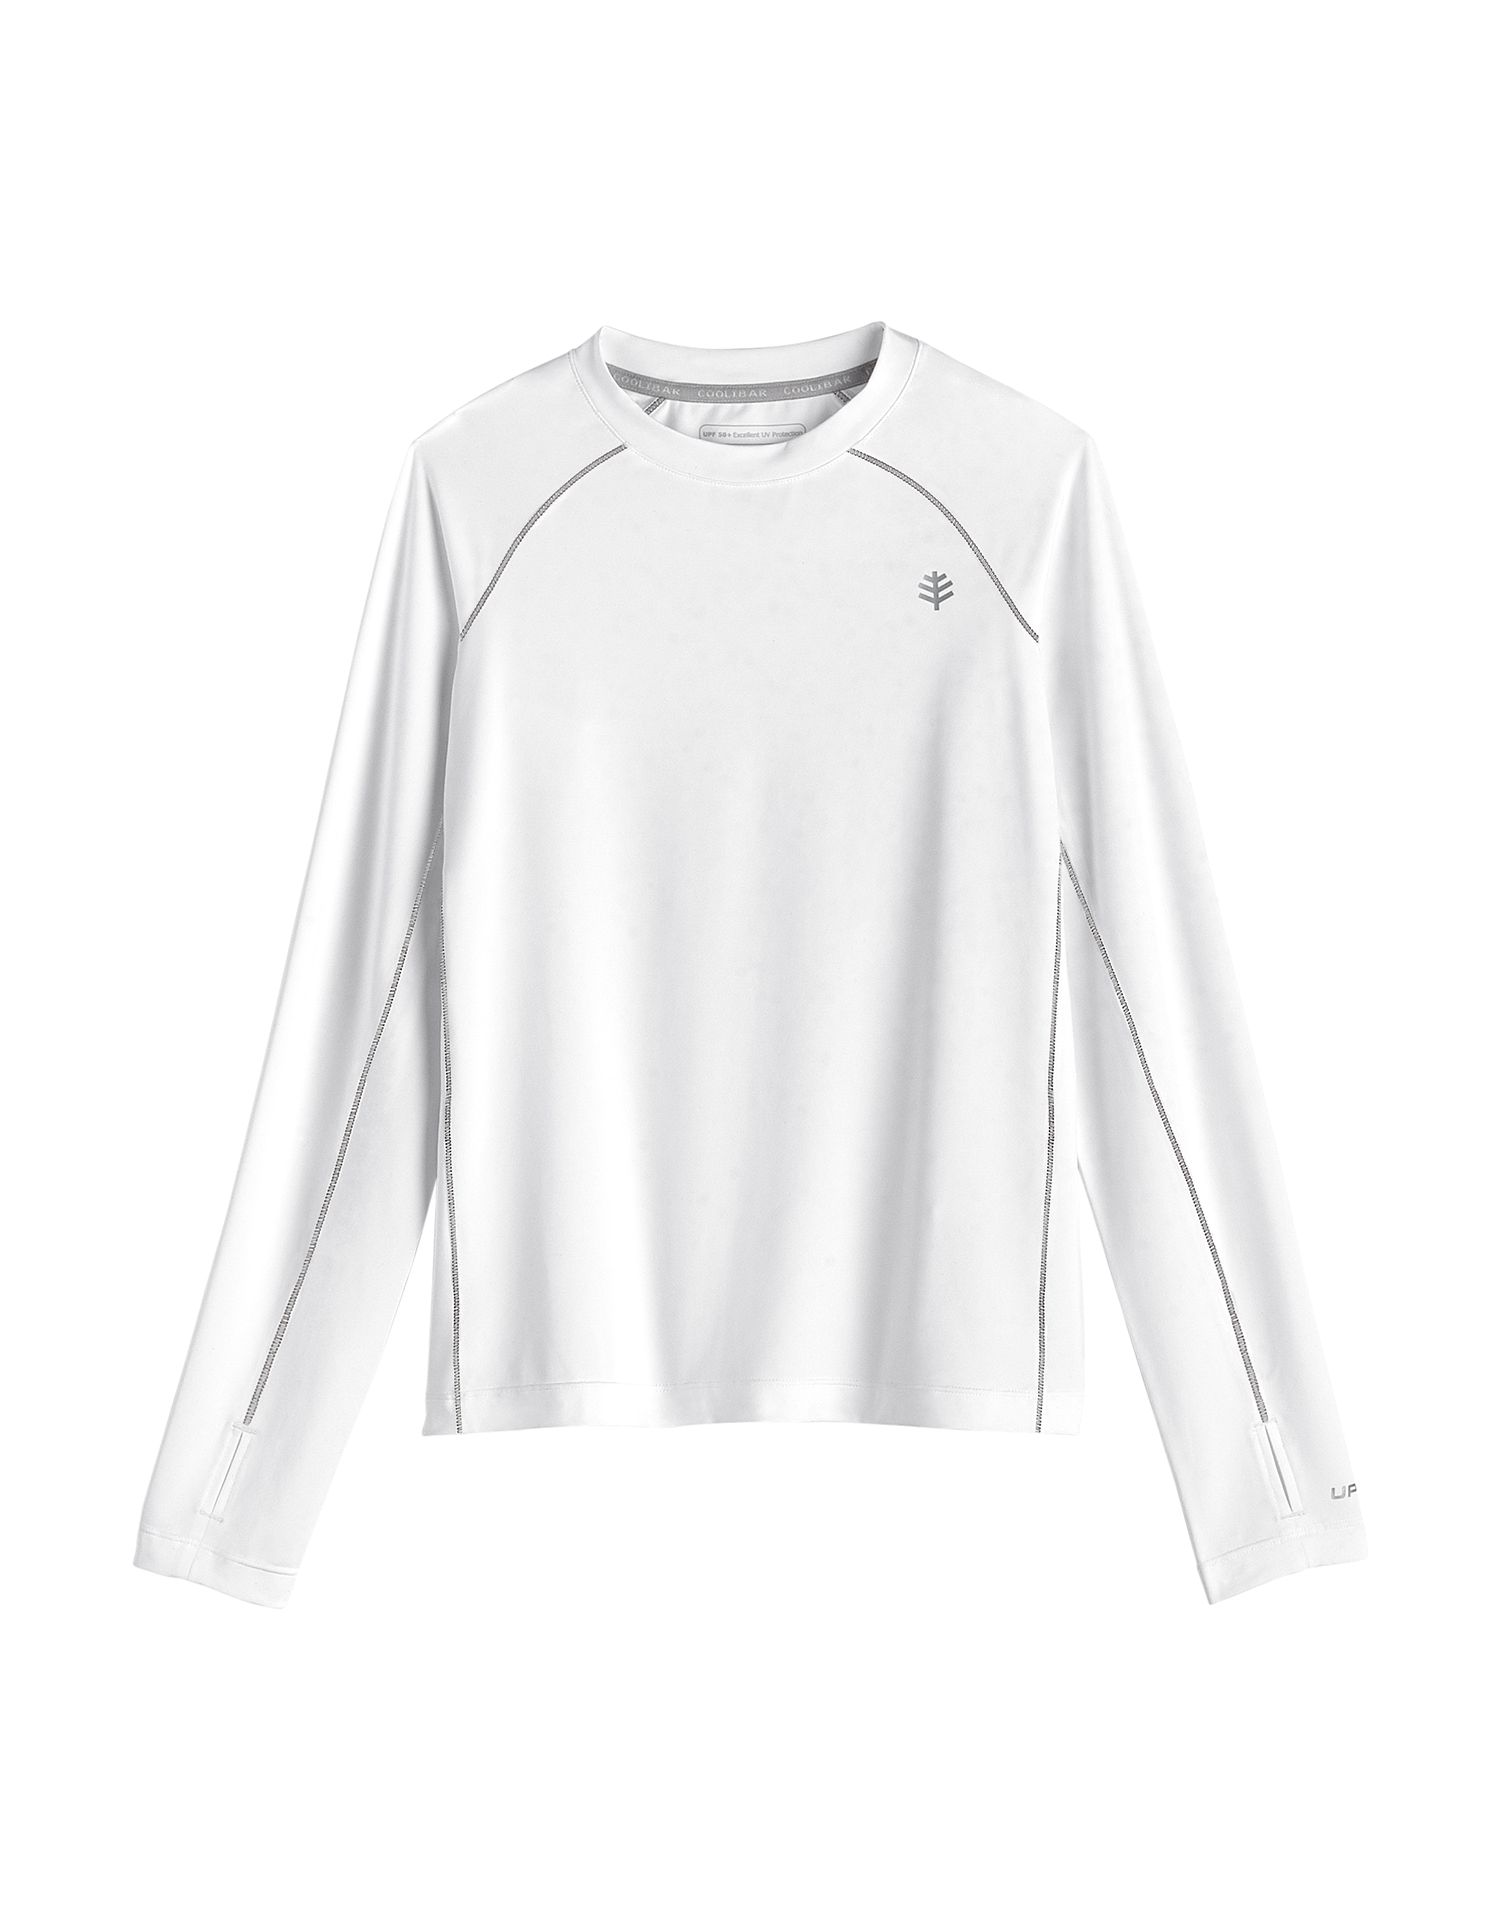 Coolibar - UV Sportshirt für Kinder - Langärmlig - Agility - Weiß